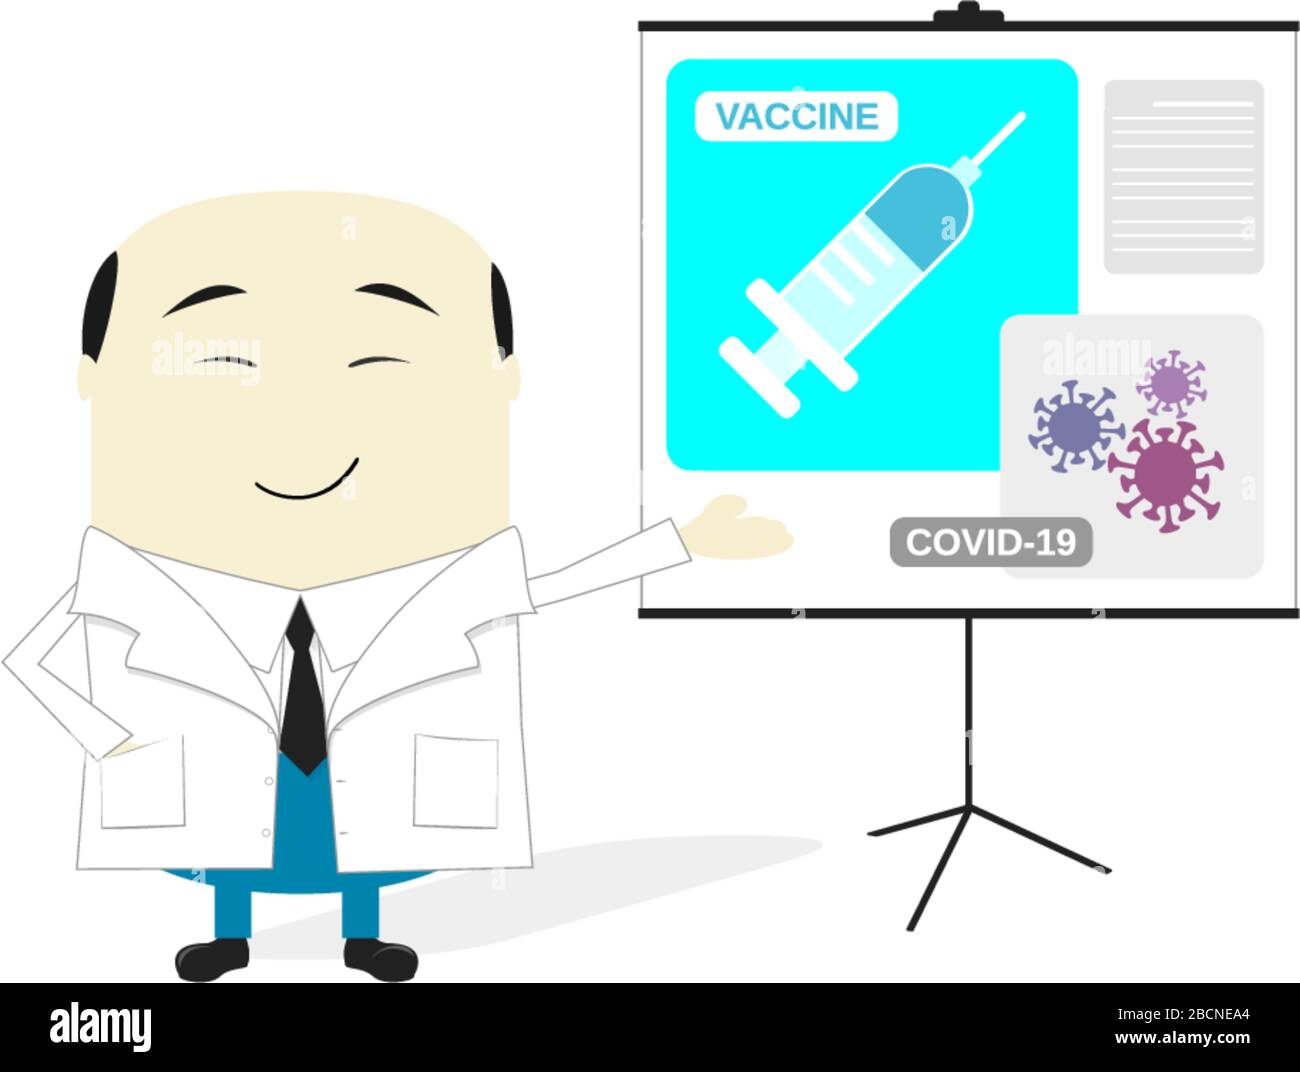 ilustración de dibujos animados de científicos asiáticos que presentan la vacuna contra el coronavirus. Aislado sobre fondo blanco Ilustración del Vector